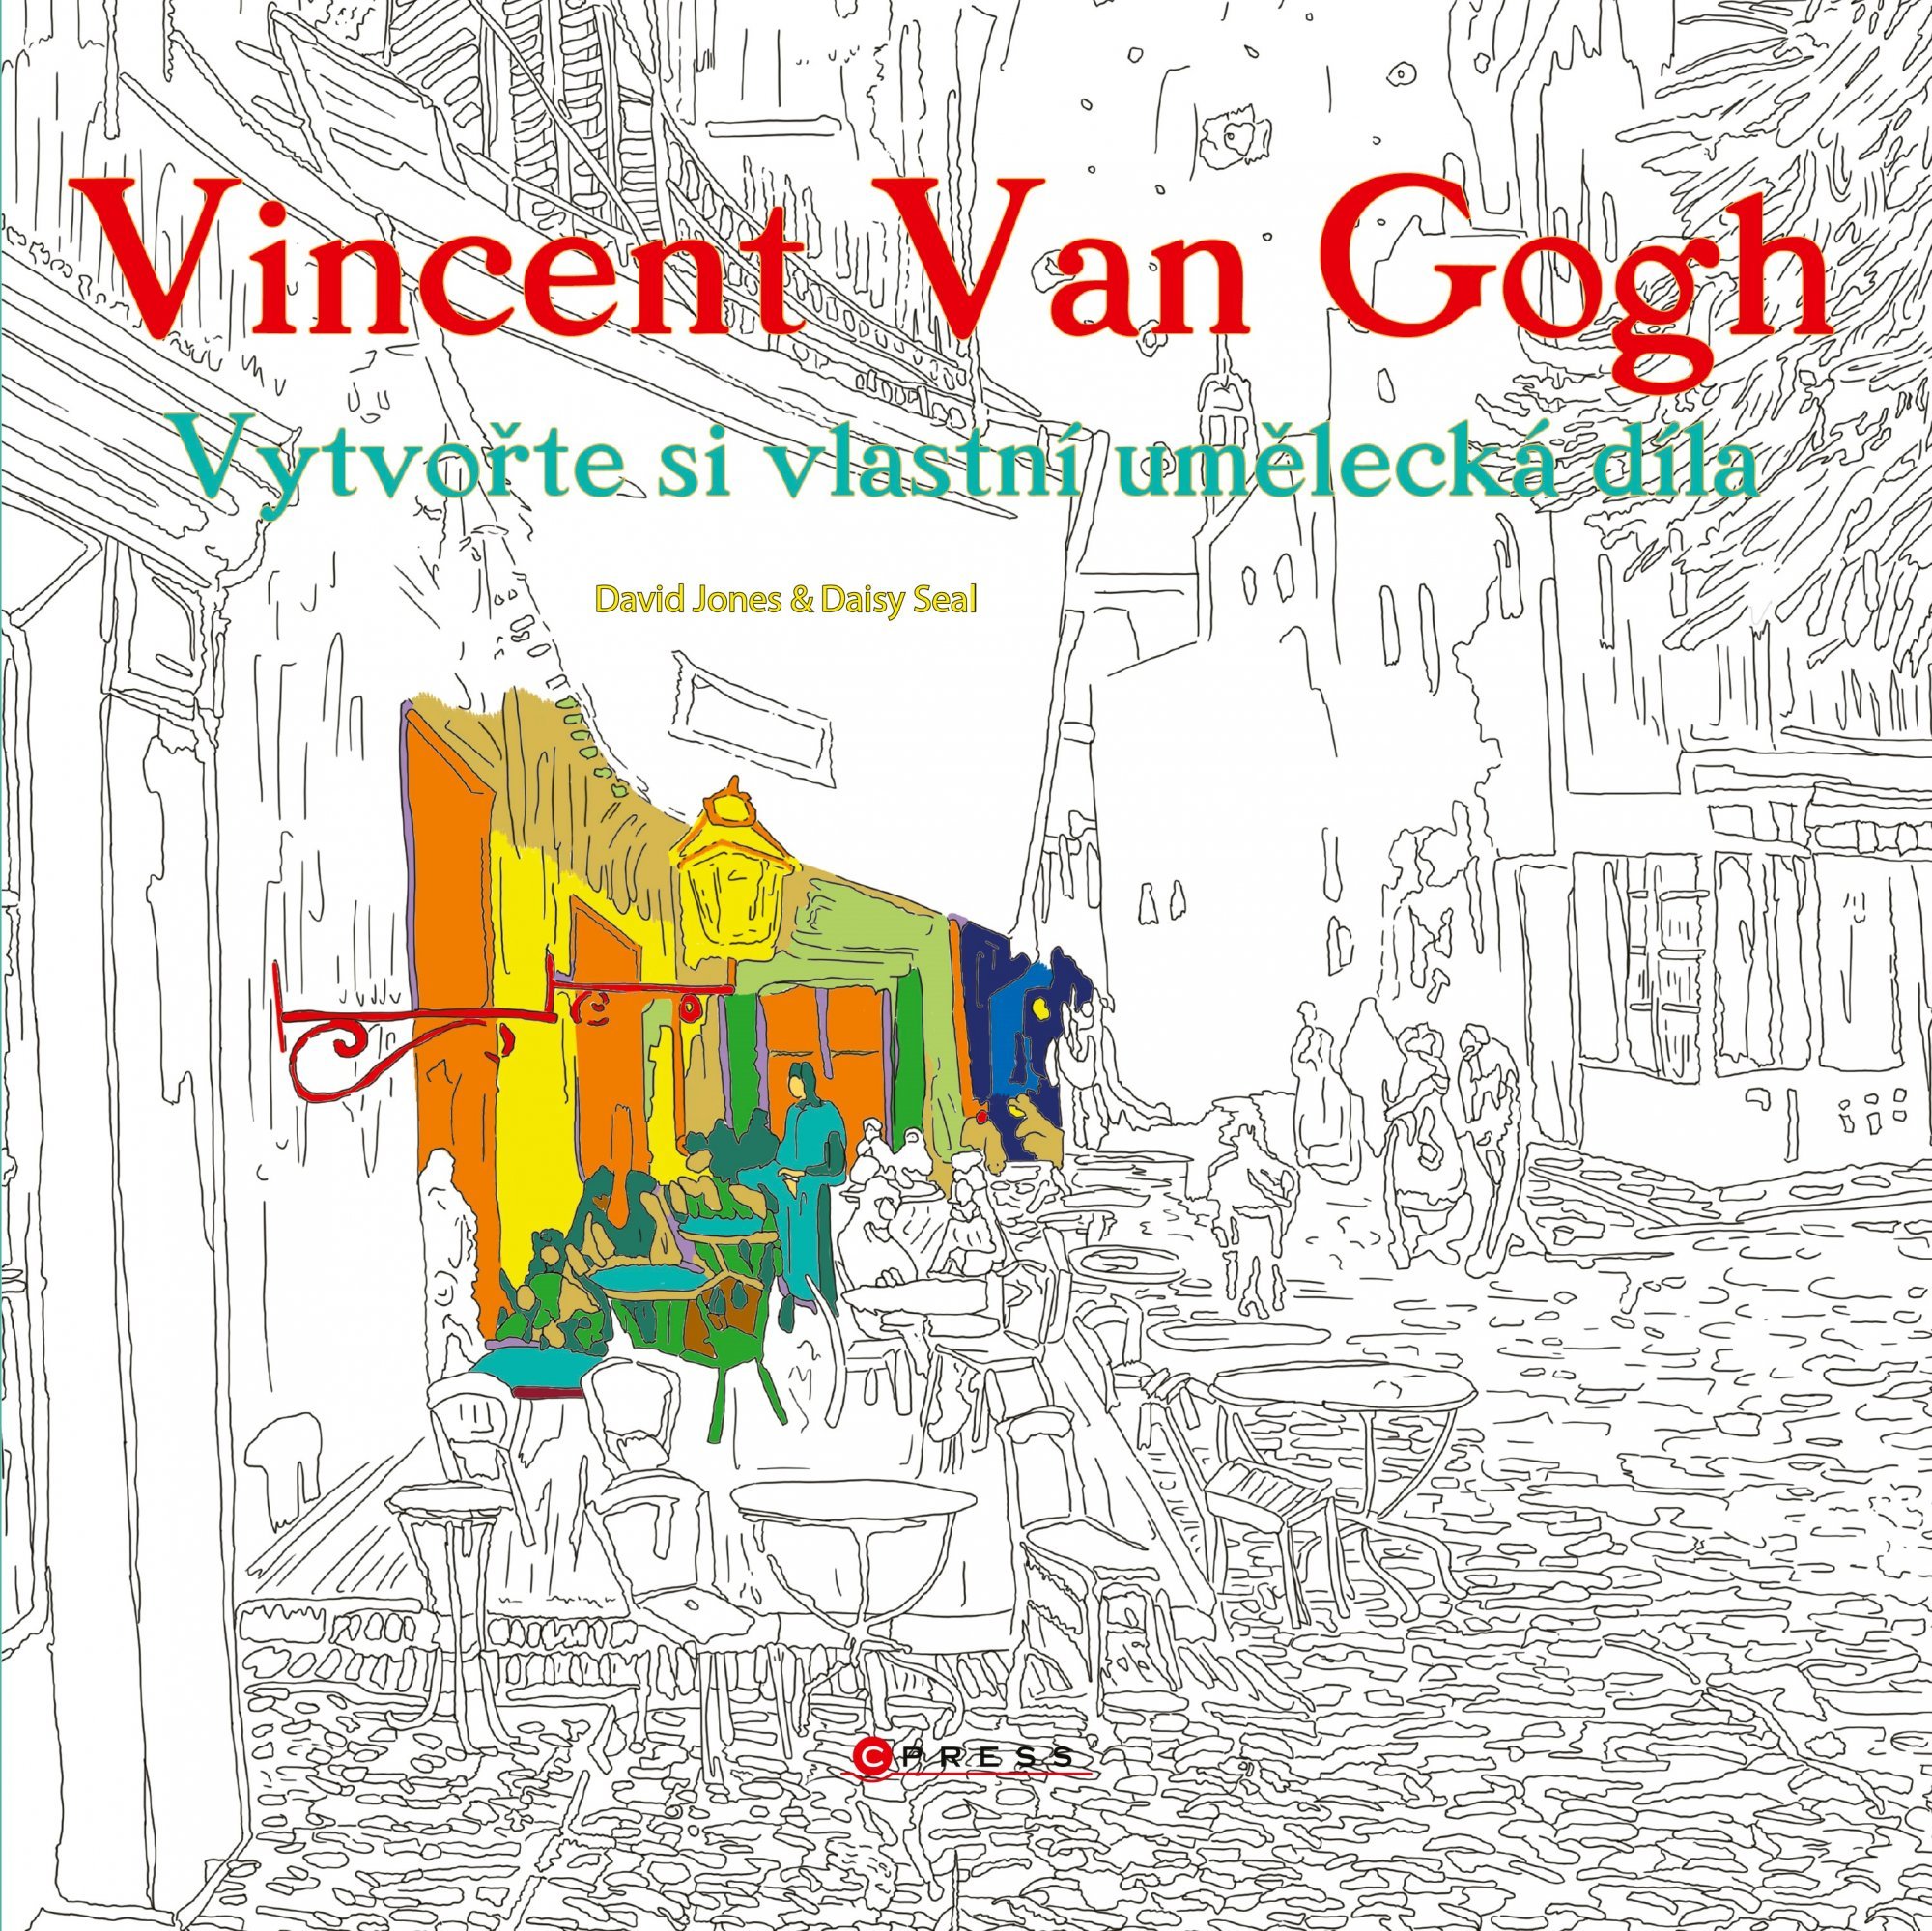 Vincent van Gogh - Vytvořte si vlastní umělecká díla - Kolektiv autorů